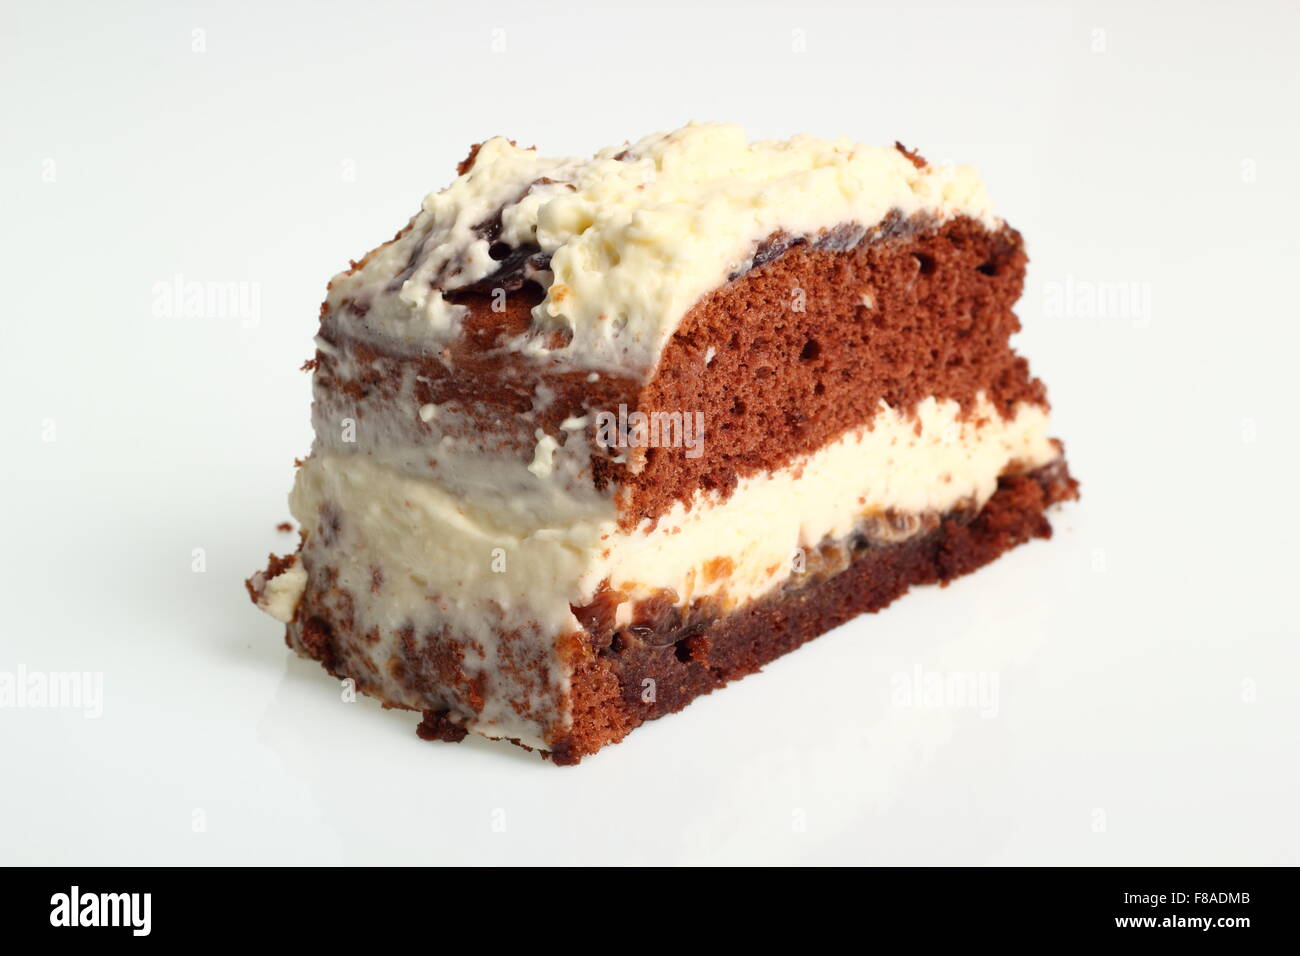 Gâteau au chocolat (Torte) de crème fouettée et de confiture Banque D'Images